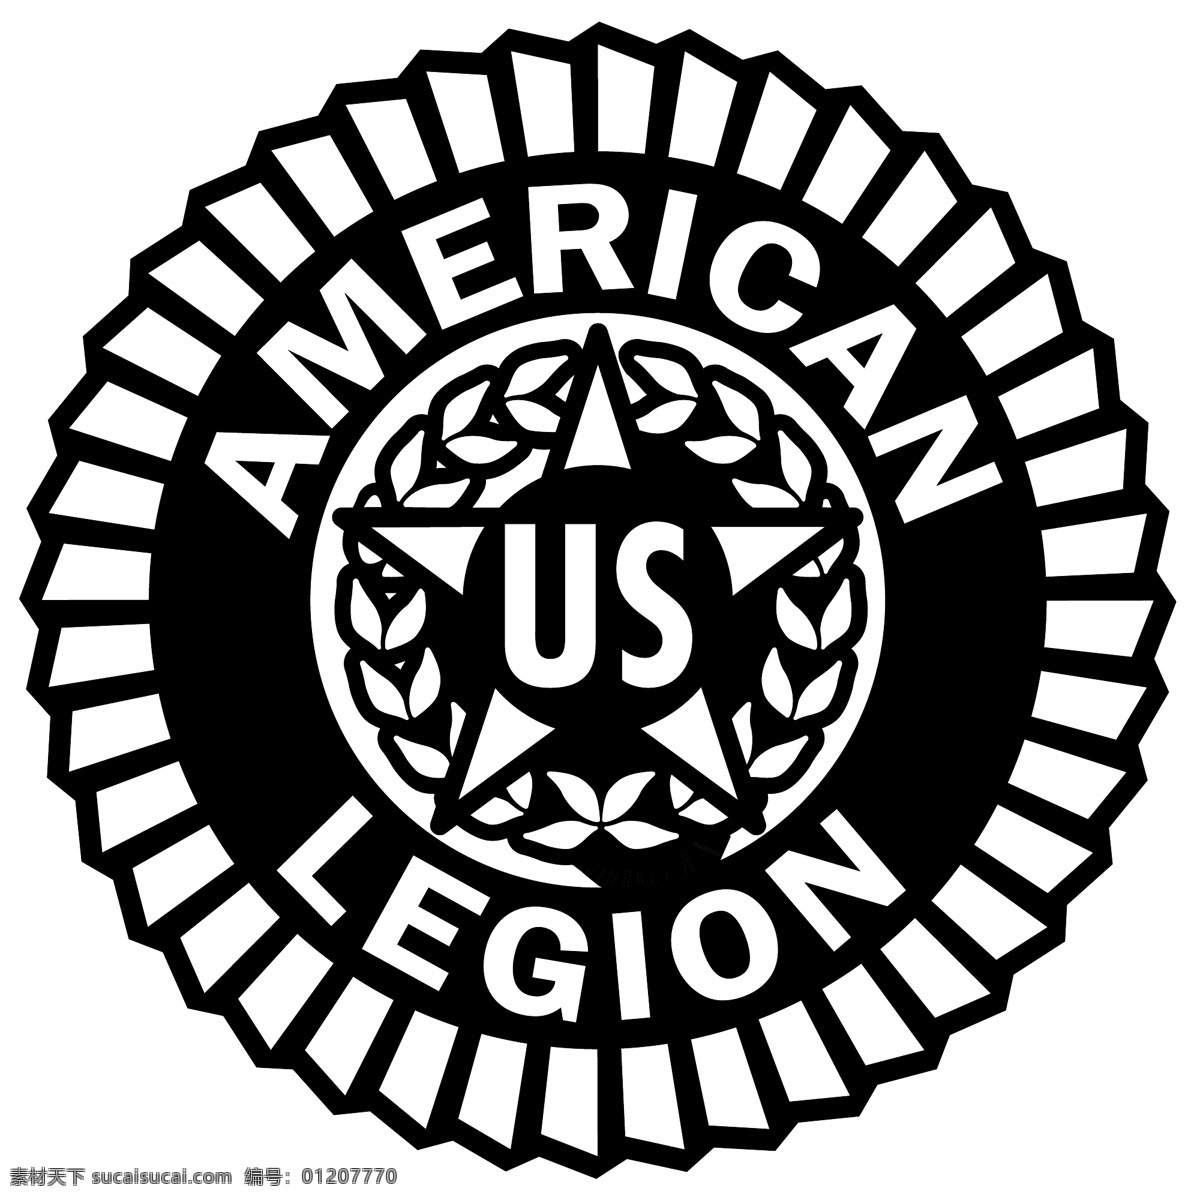 美国 退伍军人 协会 免费 军团 标志 标识 psd源文件 logo设计